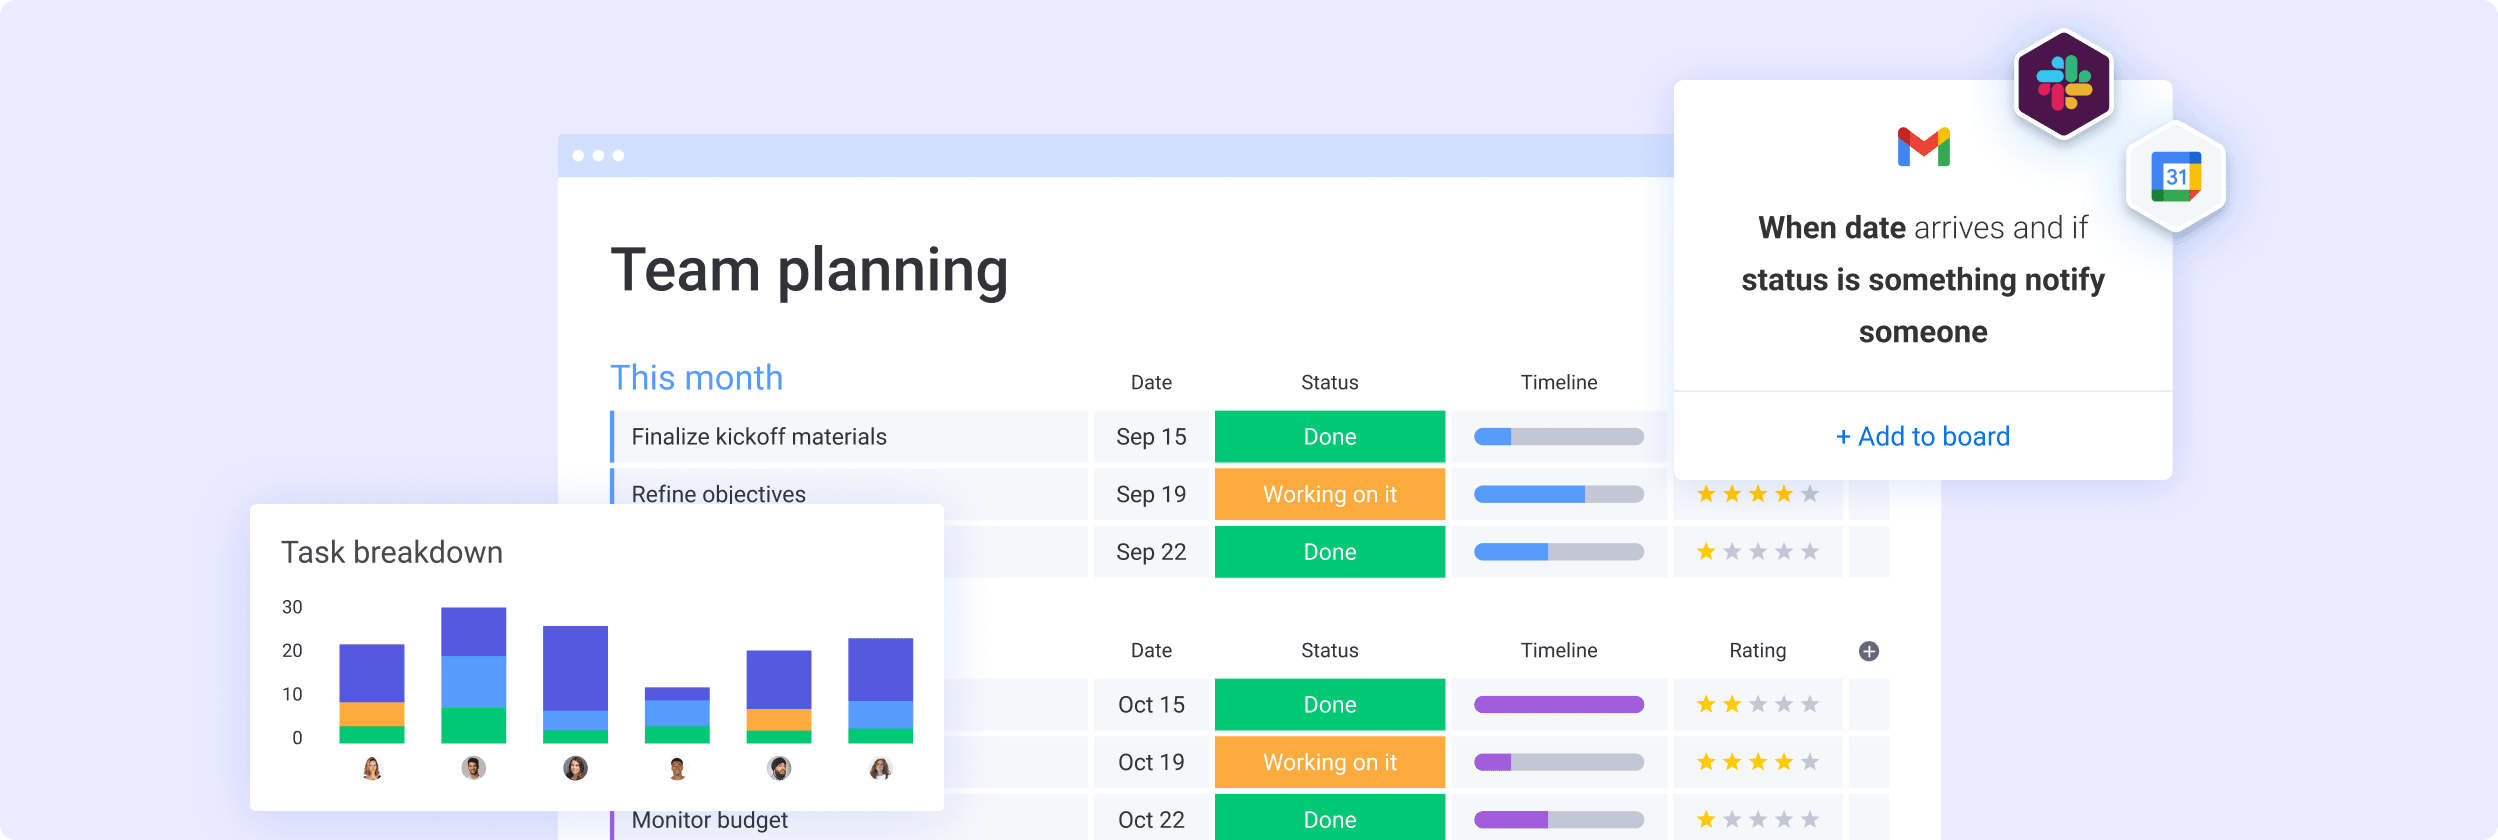 Teamplanungs-Board, Aufgabenübersichts-Dashboard und Benutzer-Update mit Antworten der Teammitglieder